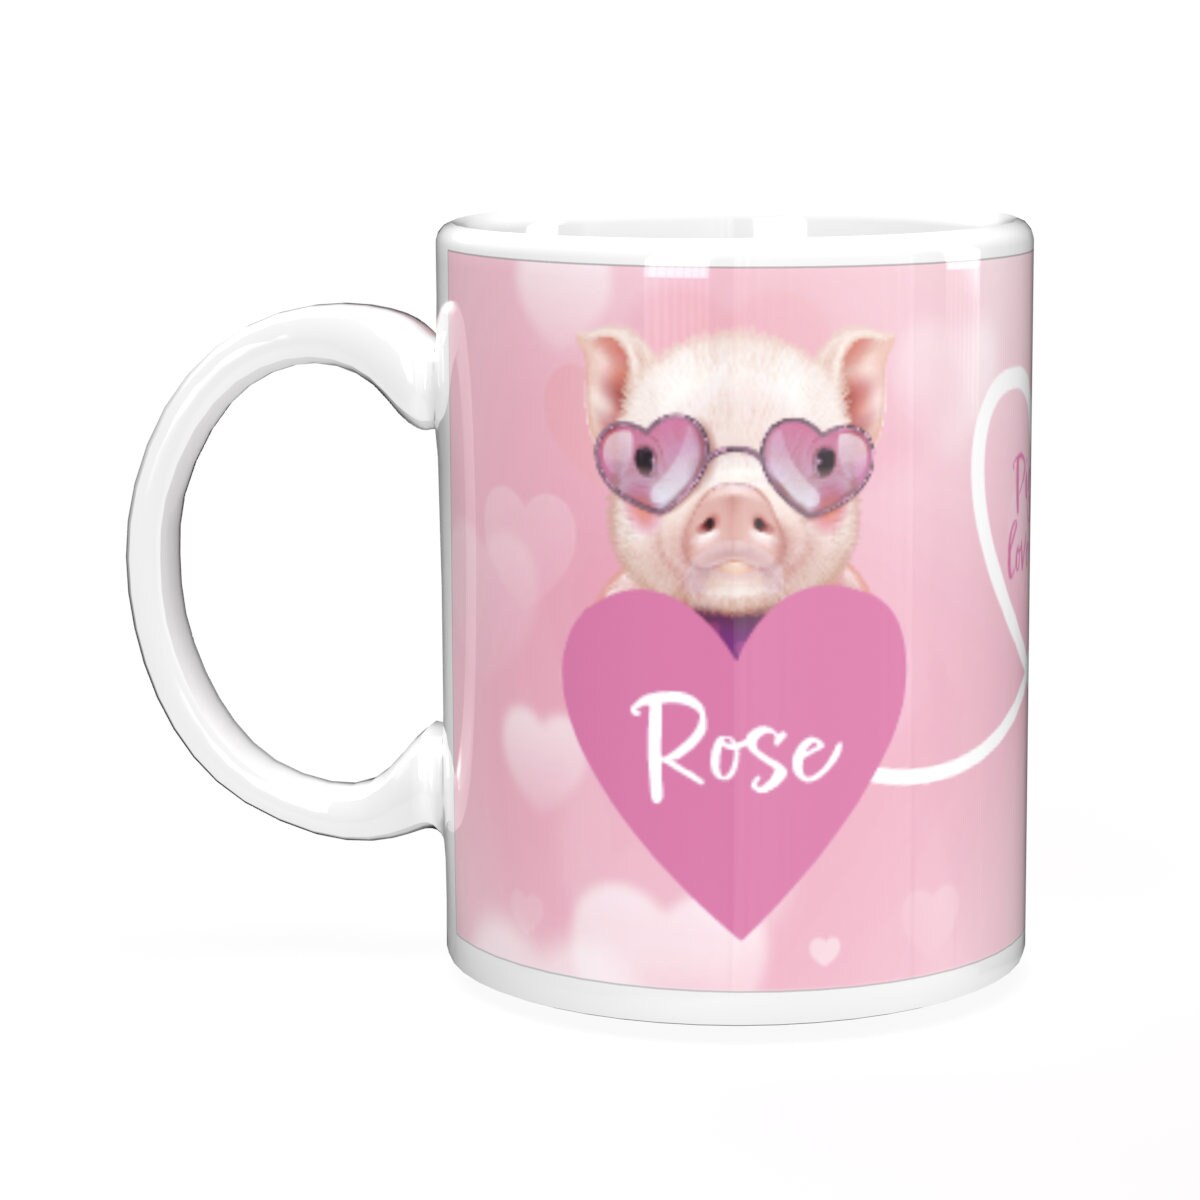 Pig piggin love you personalised mug